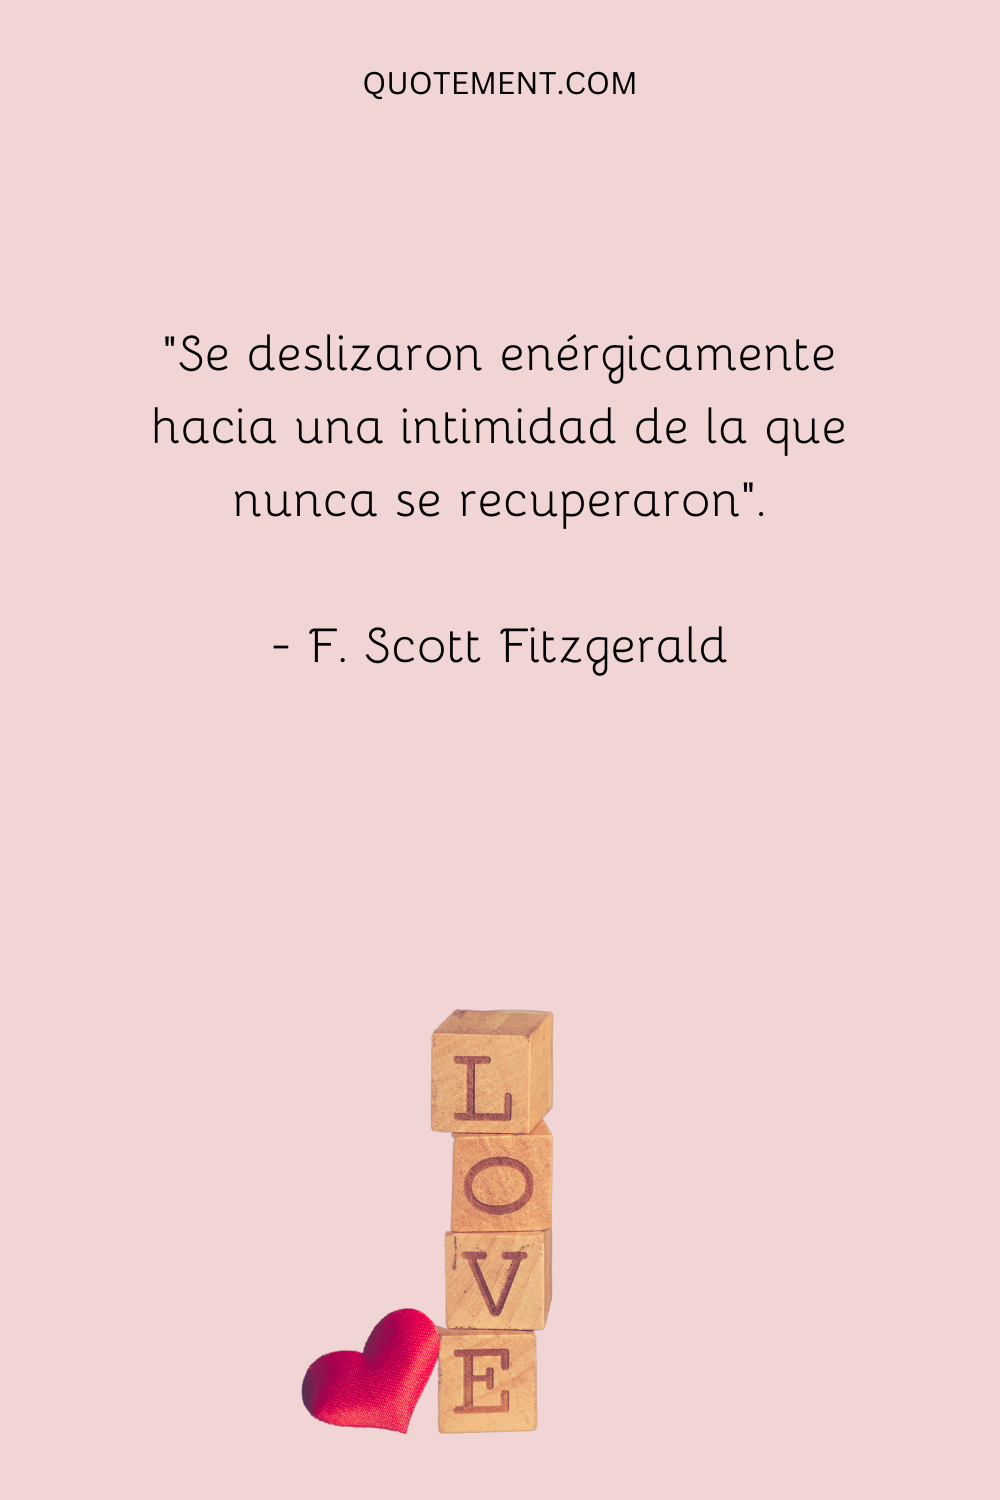 "Se deslizaron enérgicamente hacia una intimidad de la que nunca se recuperaron". - F. Scott Fitzgerald